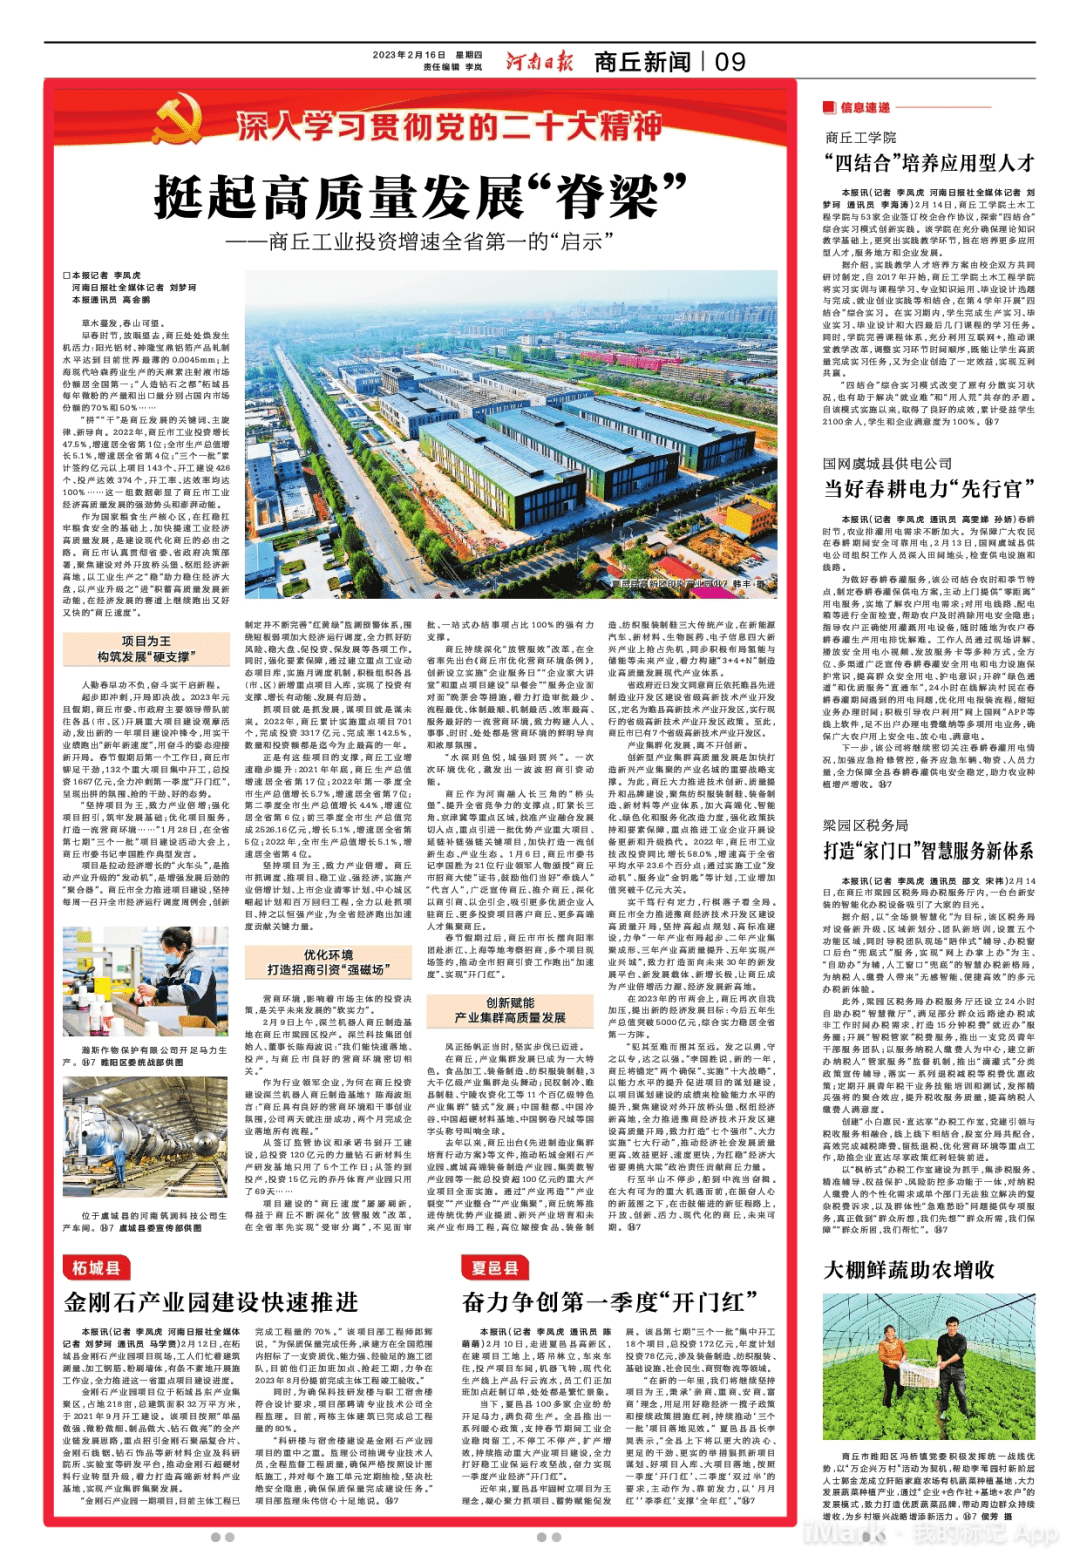 河南日报重磅报道|挺起高质量发展“脊梁”——商丘工业投资增速全省第一的启示